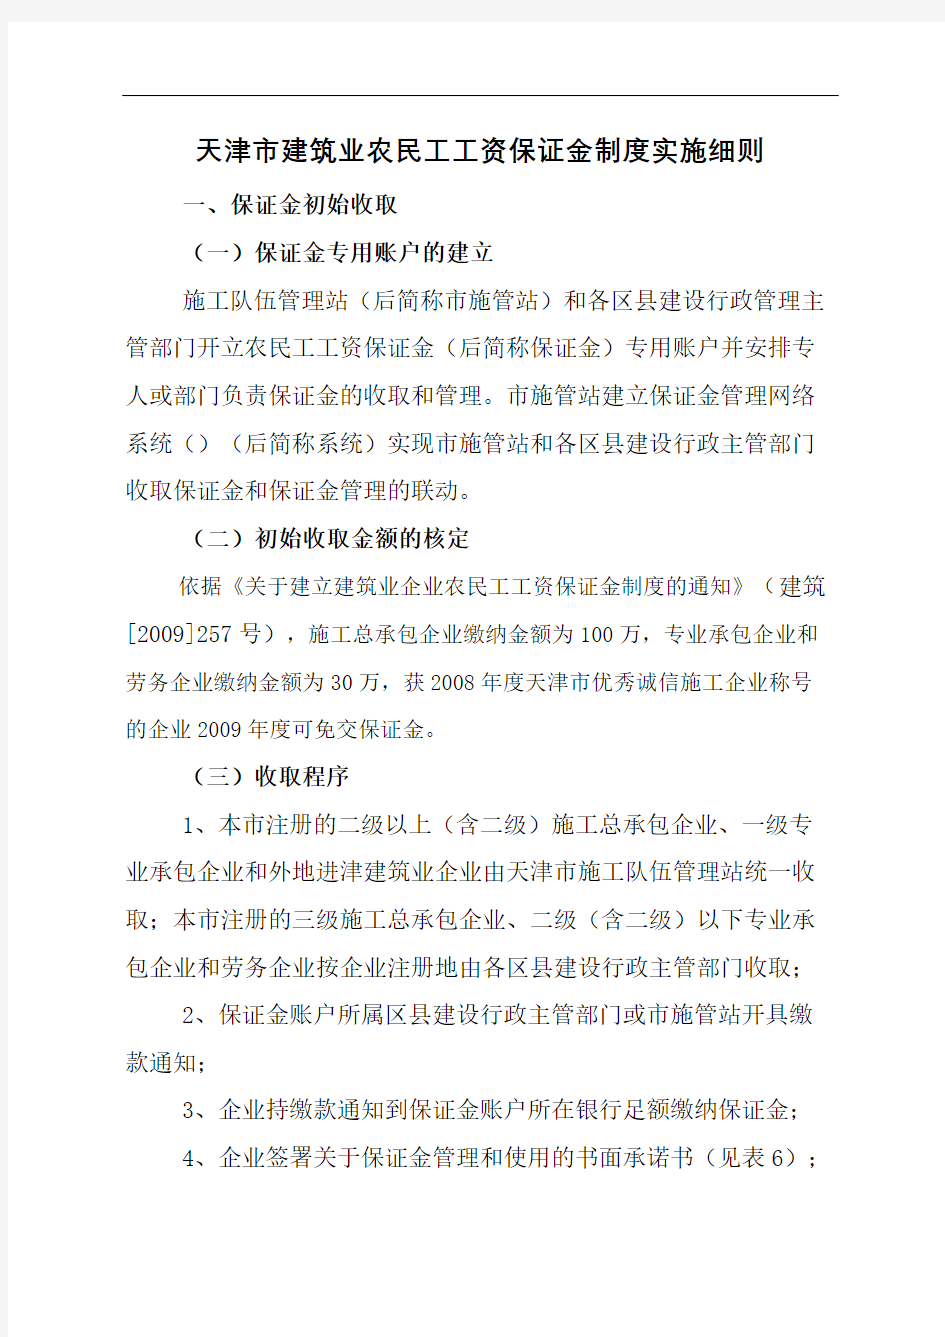 天津市建筑业农民工工资保证金制度实施细则完整版